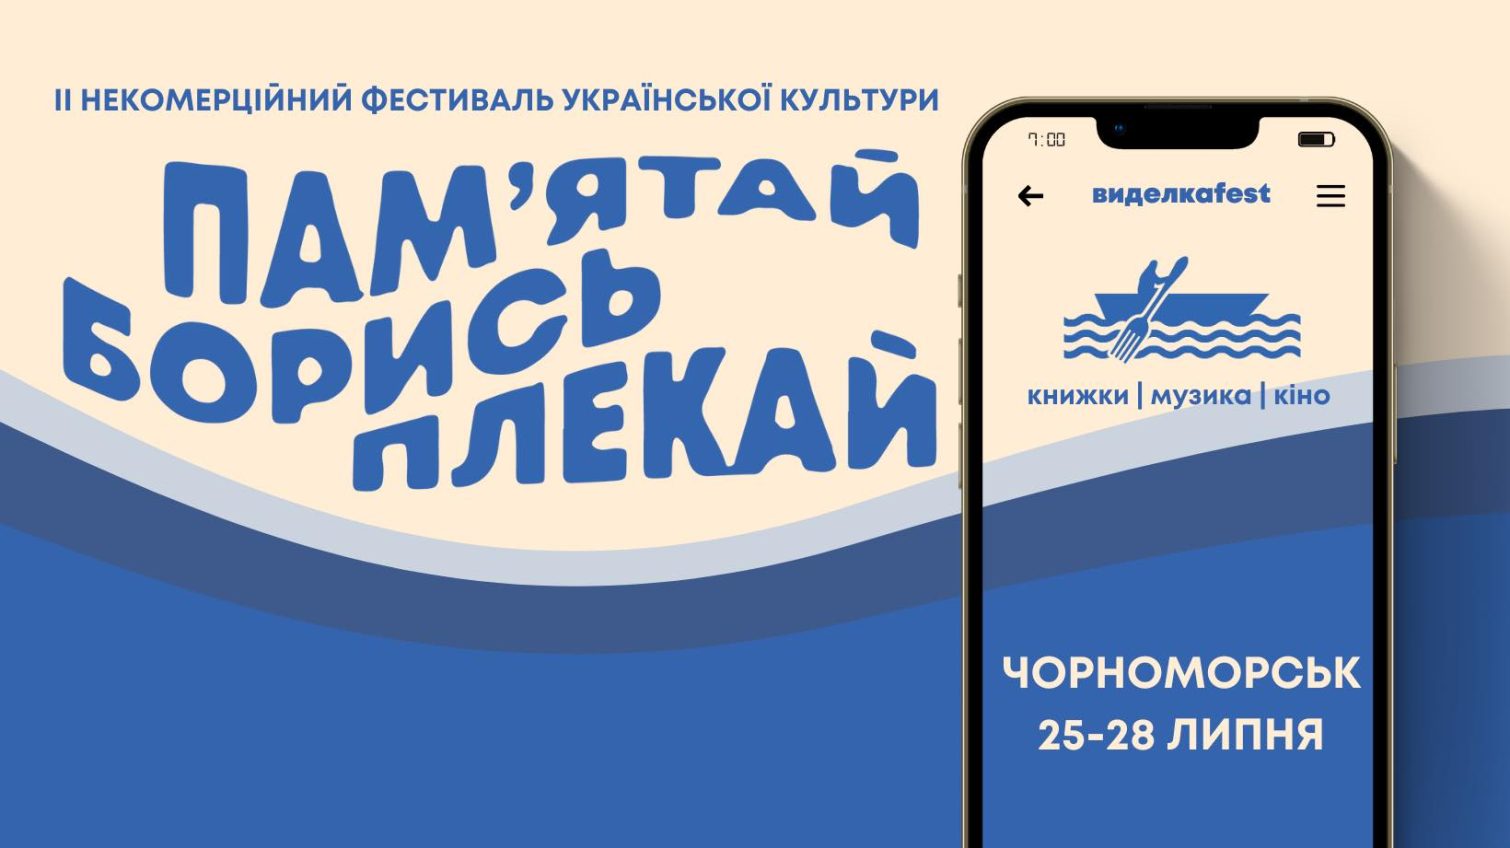 На Одещині відбудеться музикально-фольклорний фестиваль виделкаfest – не там, де раніше «фото»